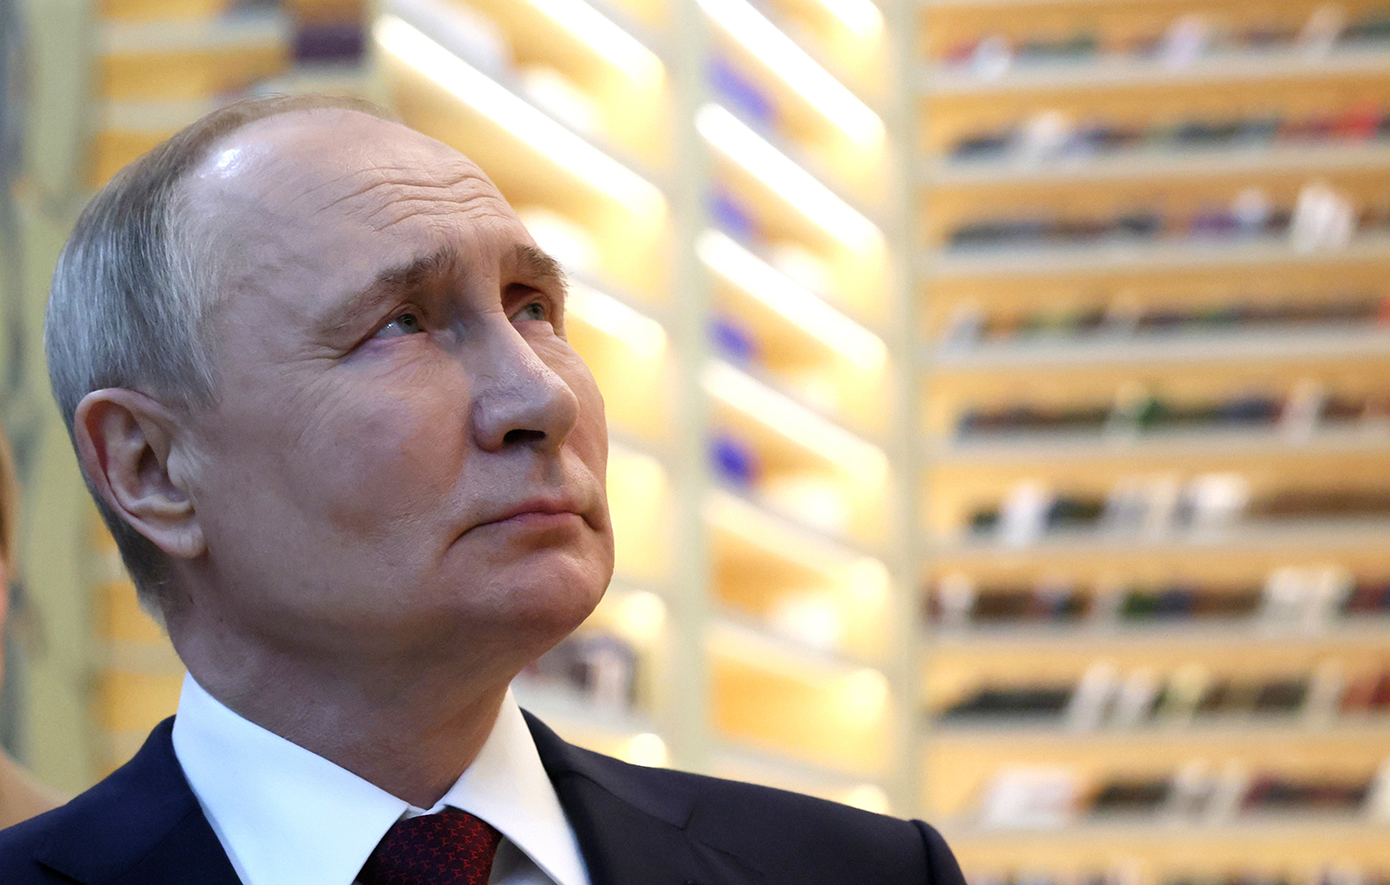 Οι τέσσερις αποφάσεις που στιγμάτισαν την εξουσία του Πούτιν